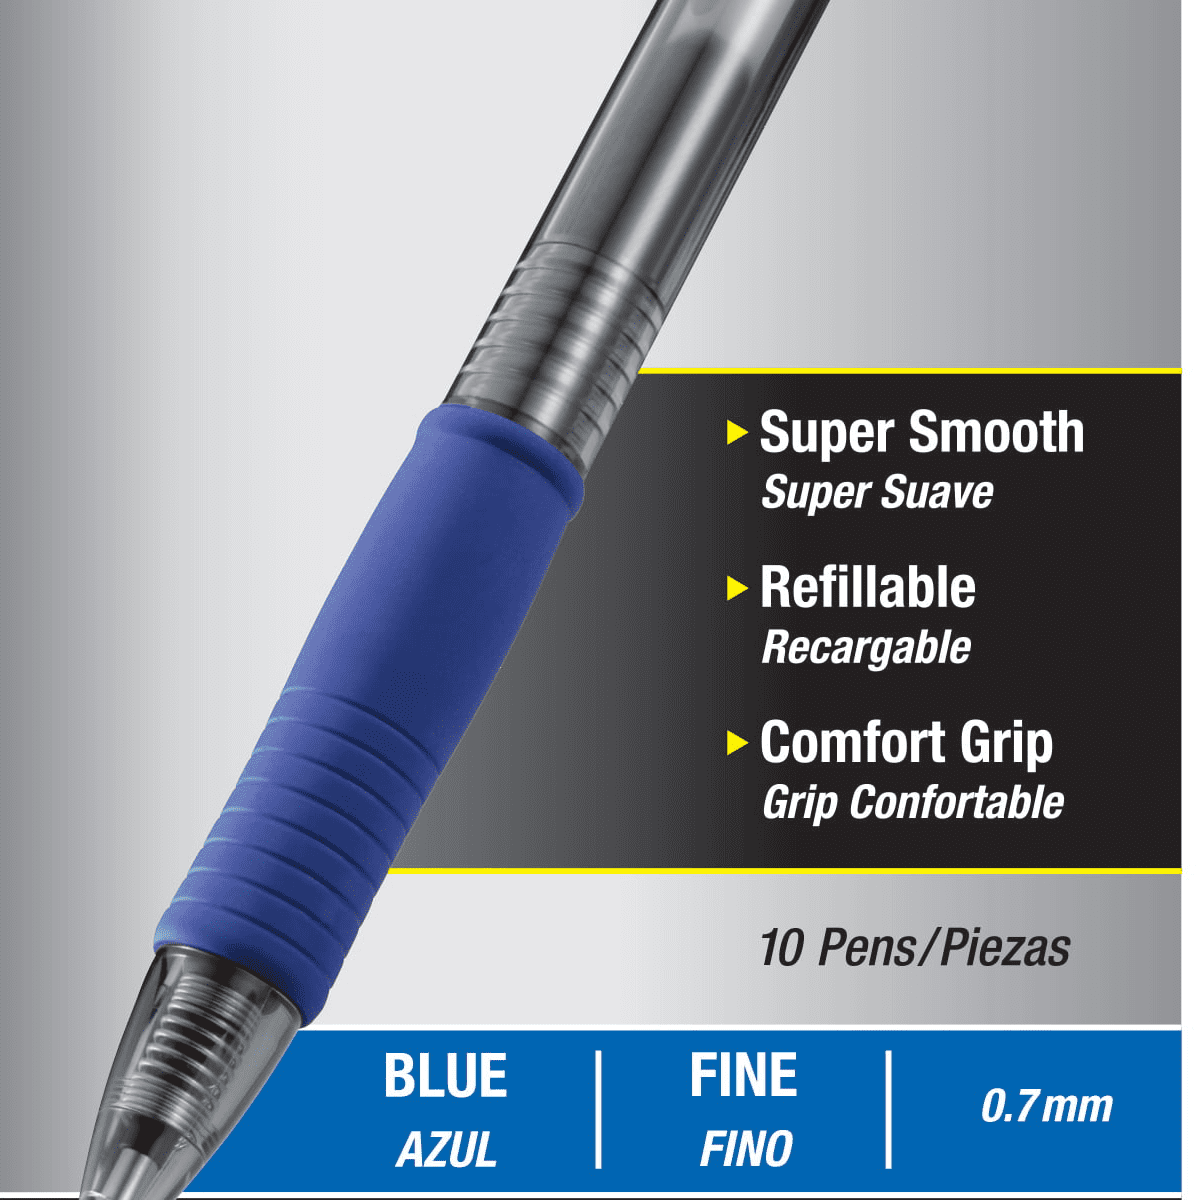 Pilot Automotive 14784 PILOT G2 Premium gel Pens, Fine Point Gel Ink Pen,  0.7 mm, Refillable & Retractable Rolling Ball, 5 Black and 5 Blue pens (Bulk